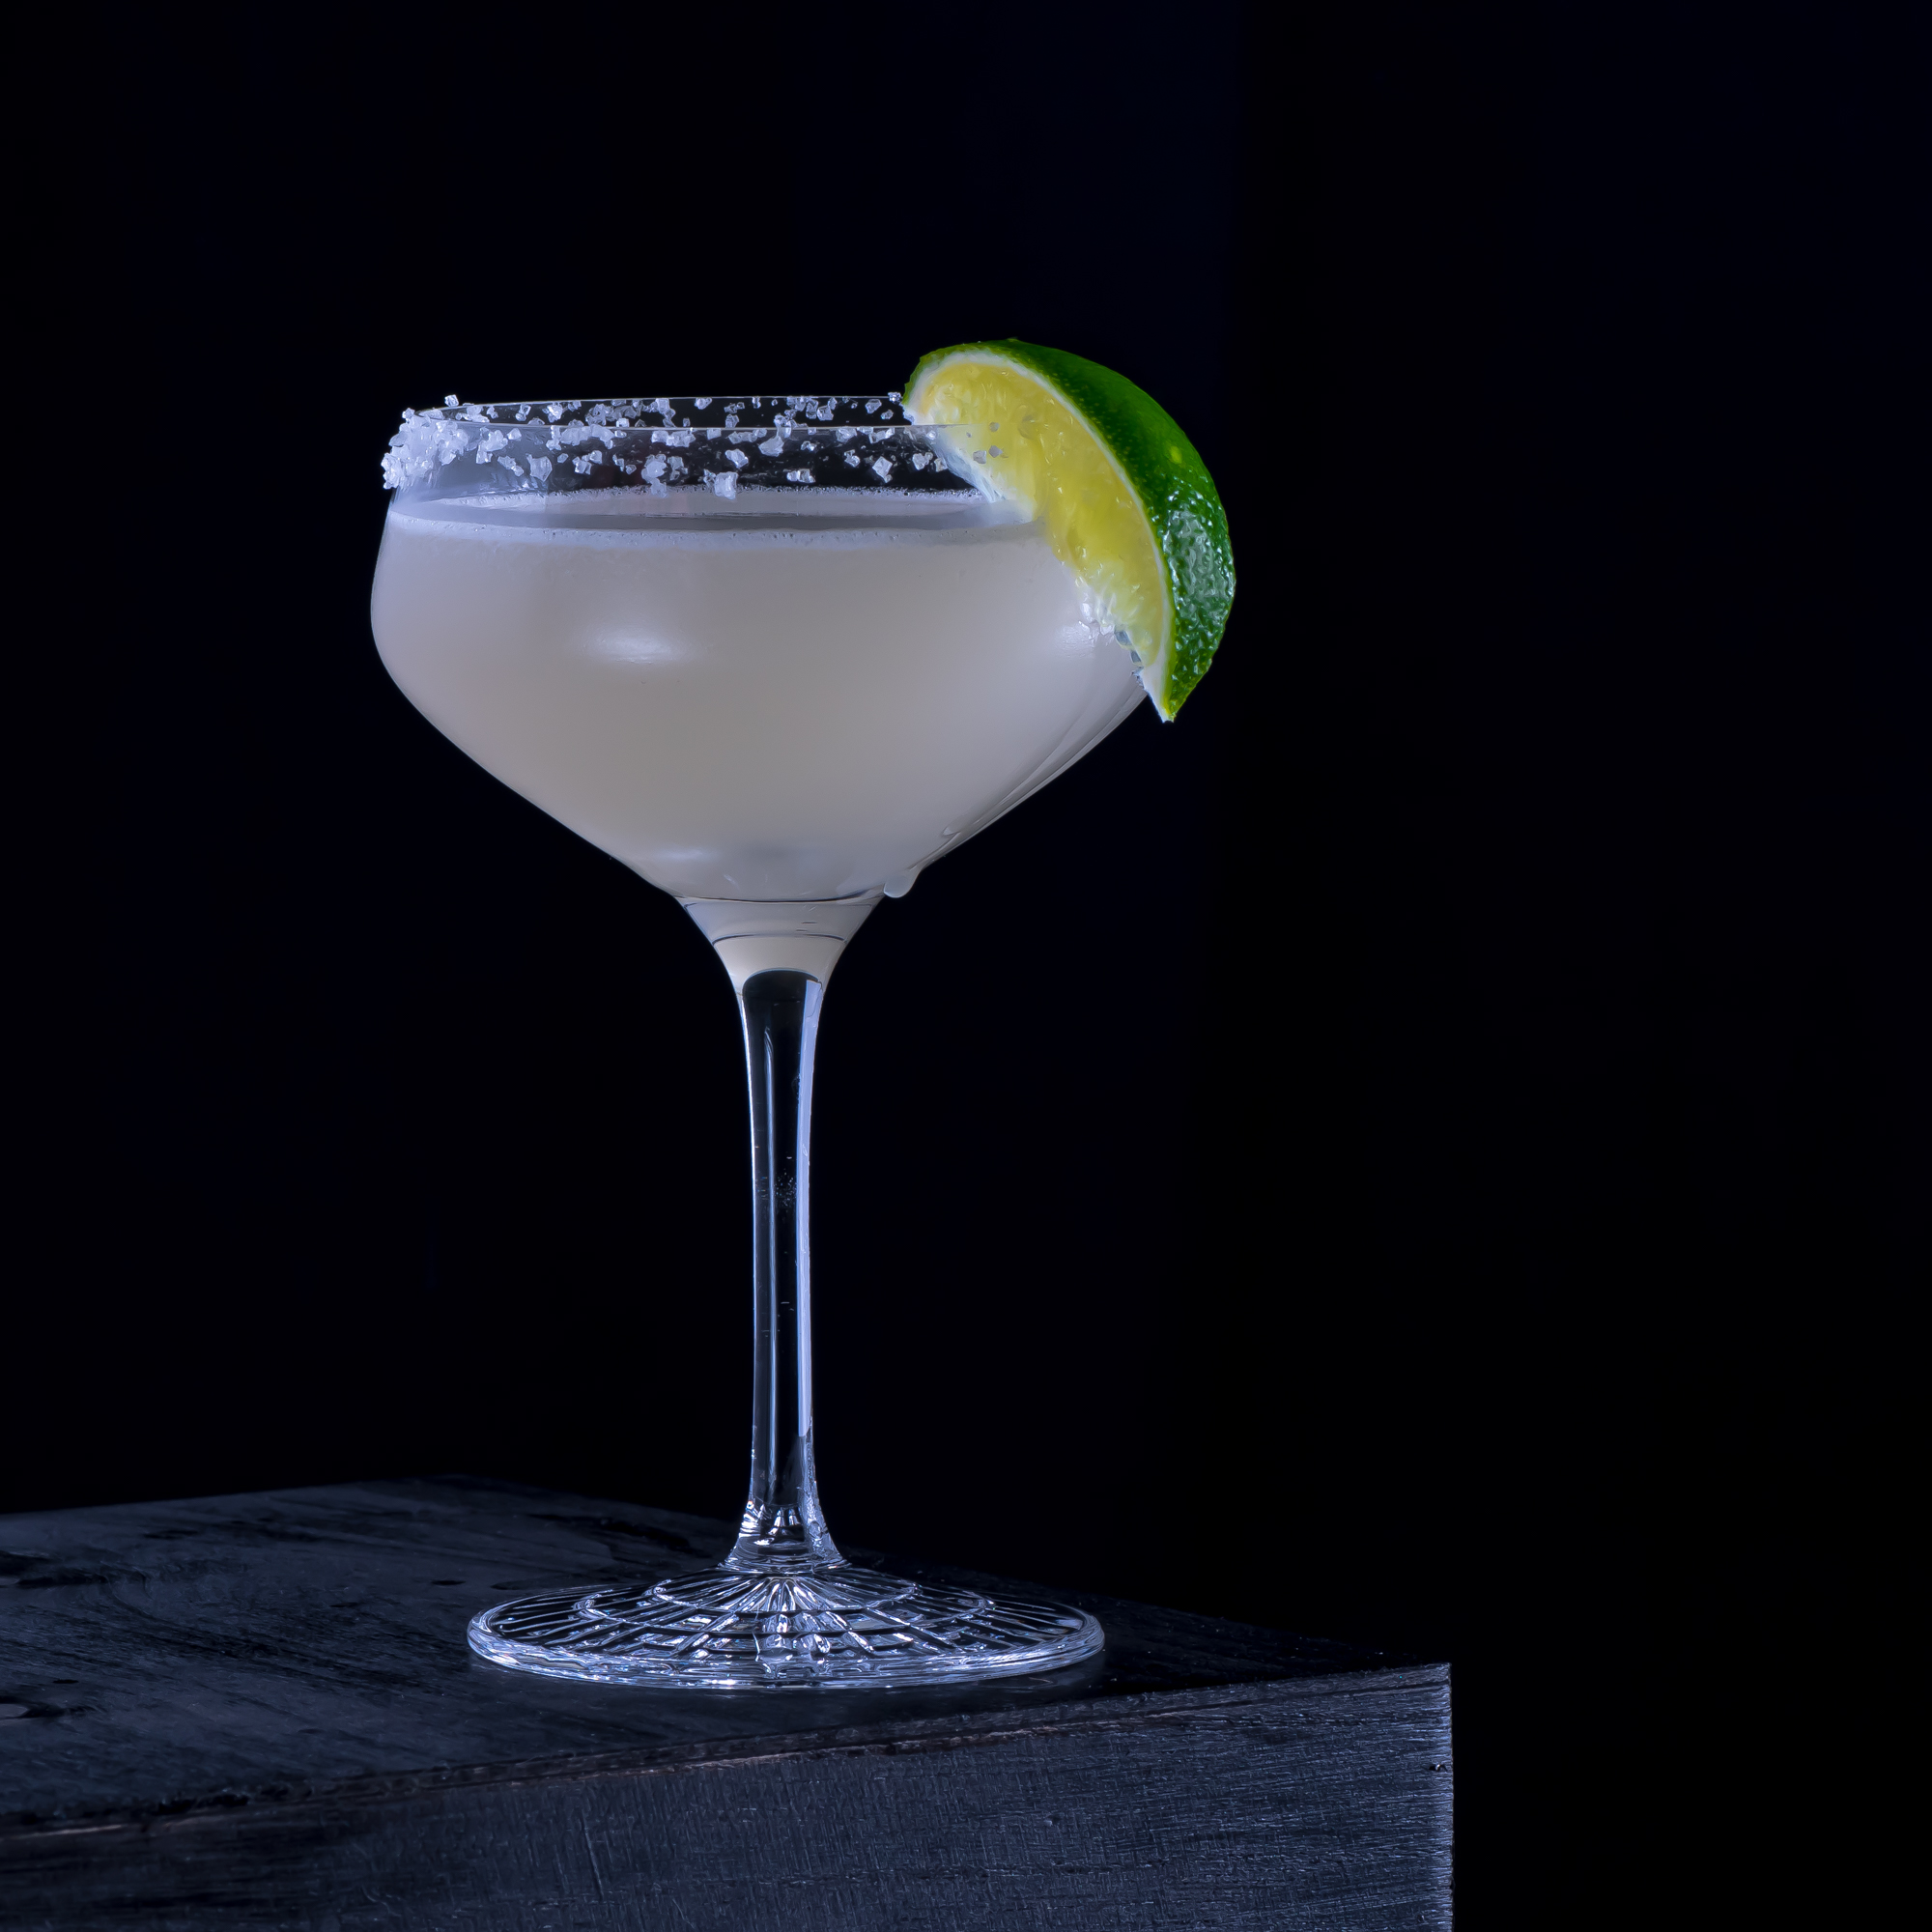 Un délicieux cocktail de margarita avec de la tequila, du triple sec, beaucoup de citron vert et un bord salé.